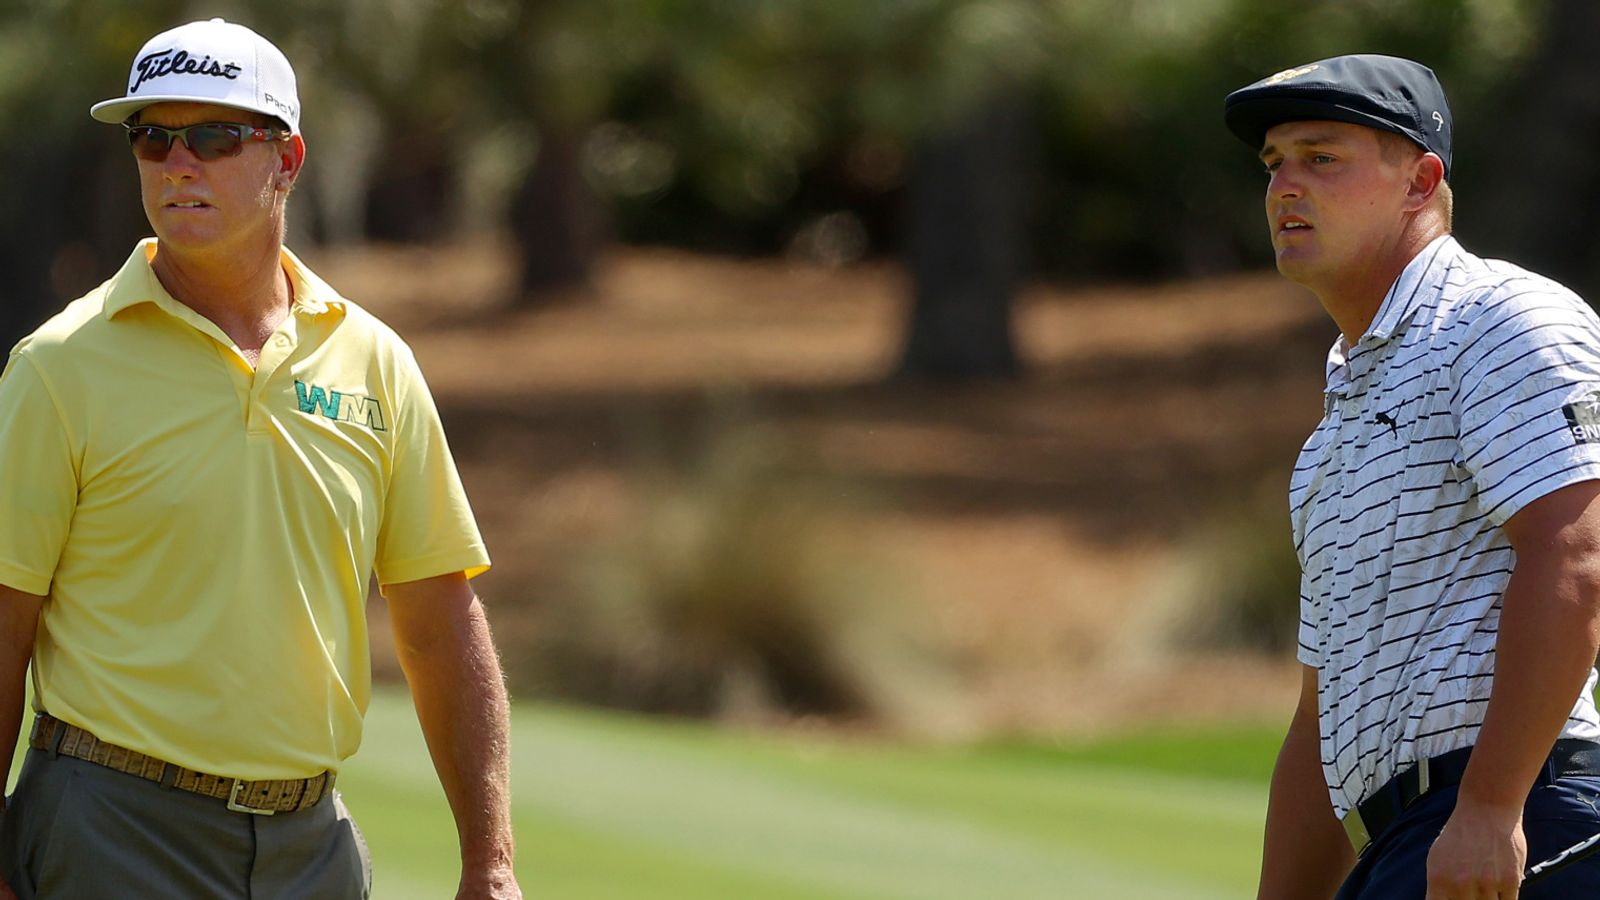 Saudi Golf League “tout est question d’argent”: Paul McGinley sur les commentaires “sourds” des joueurs du PGA Tour |  Nouvelles du golf